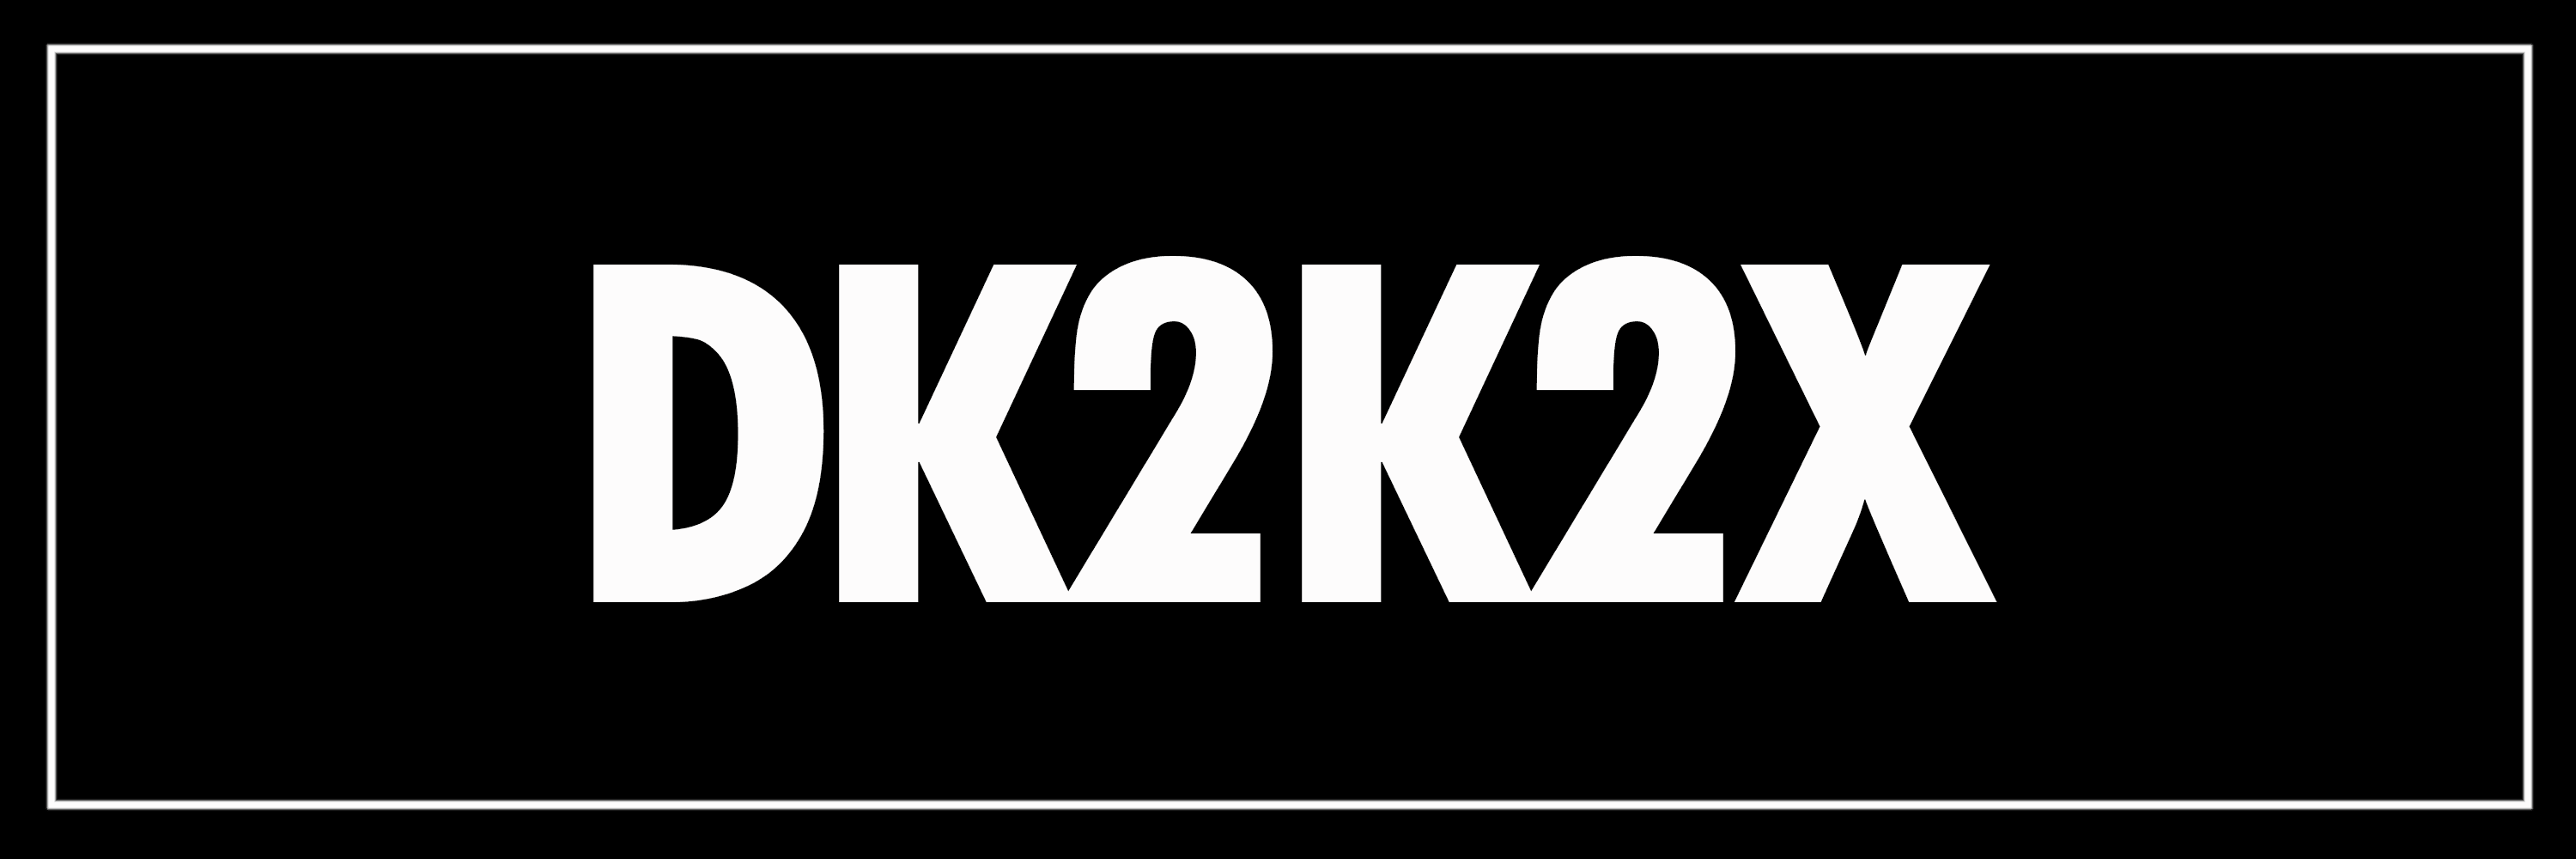 DK2K2X 横幅